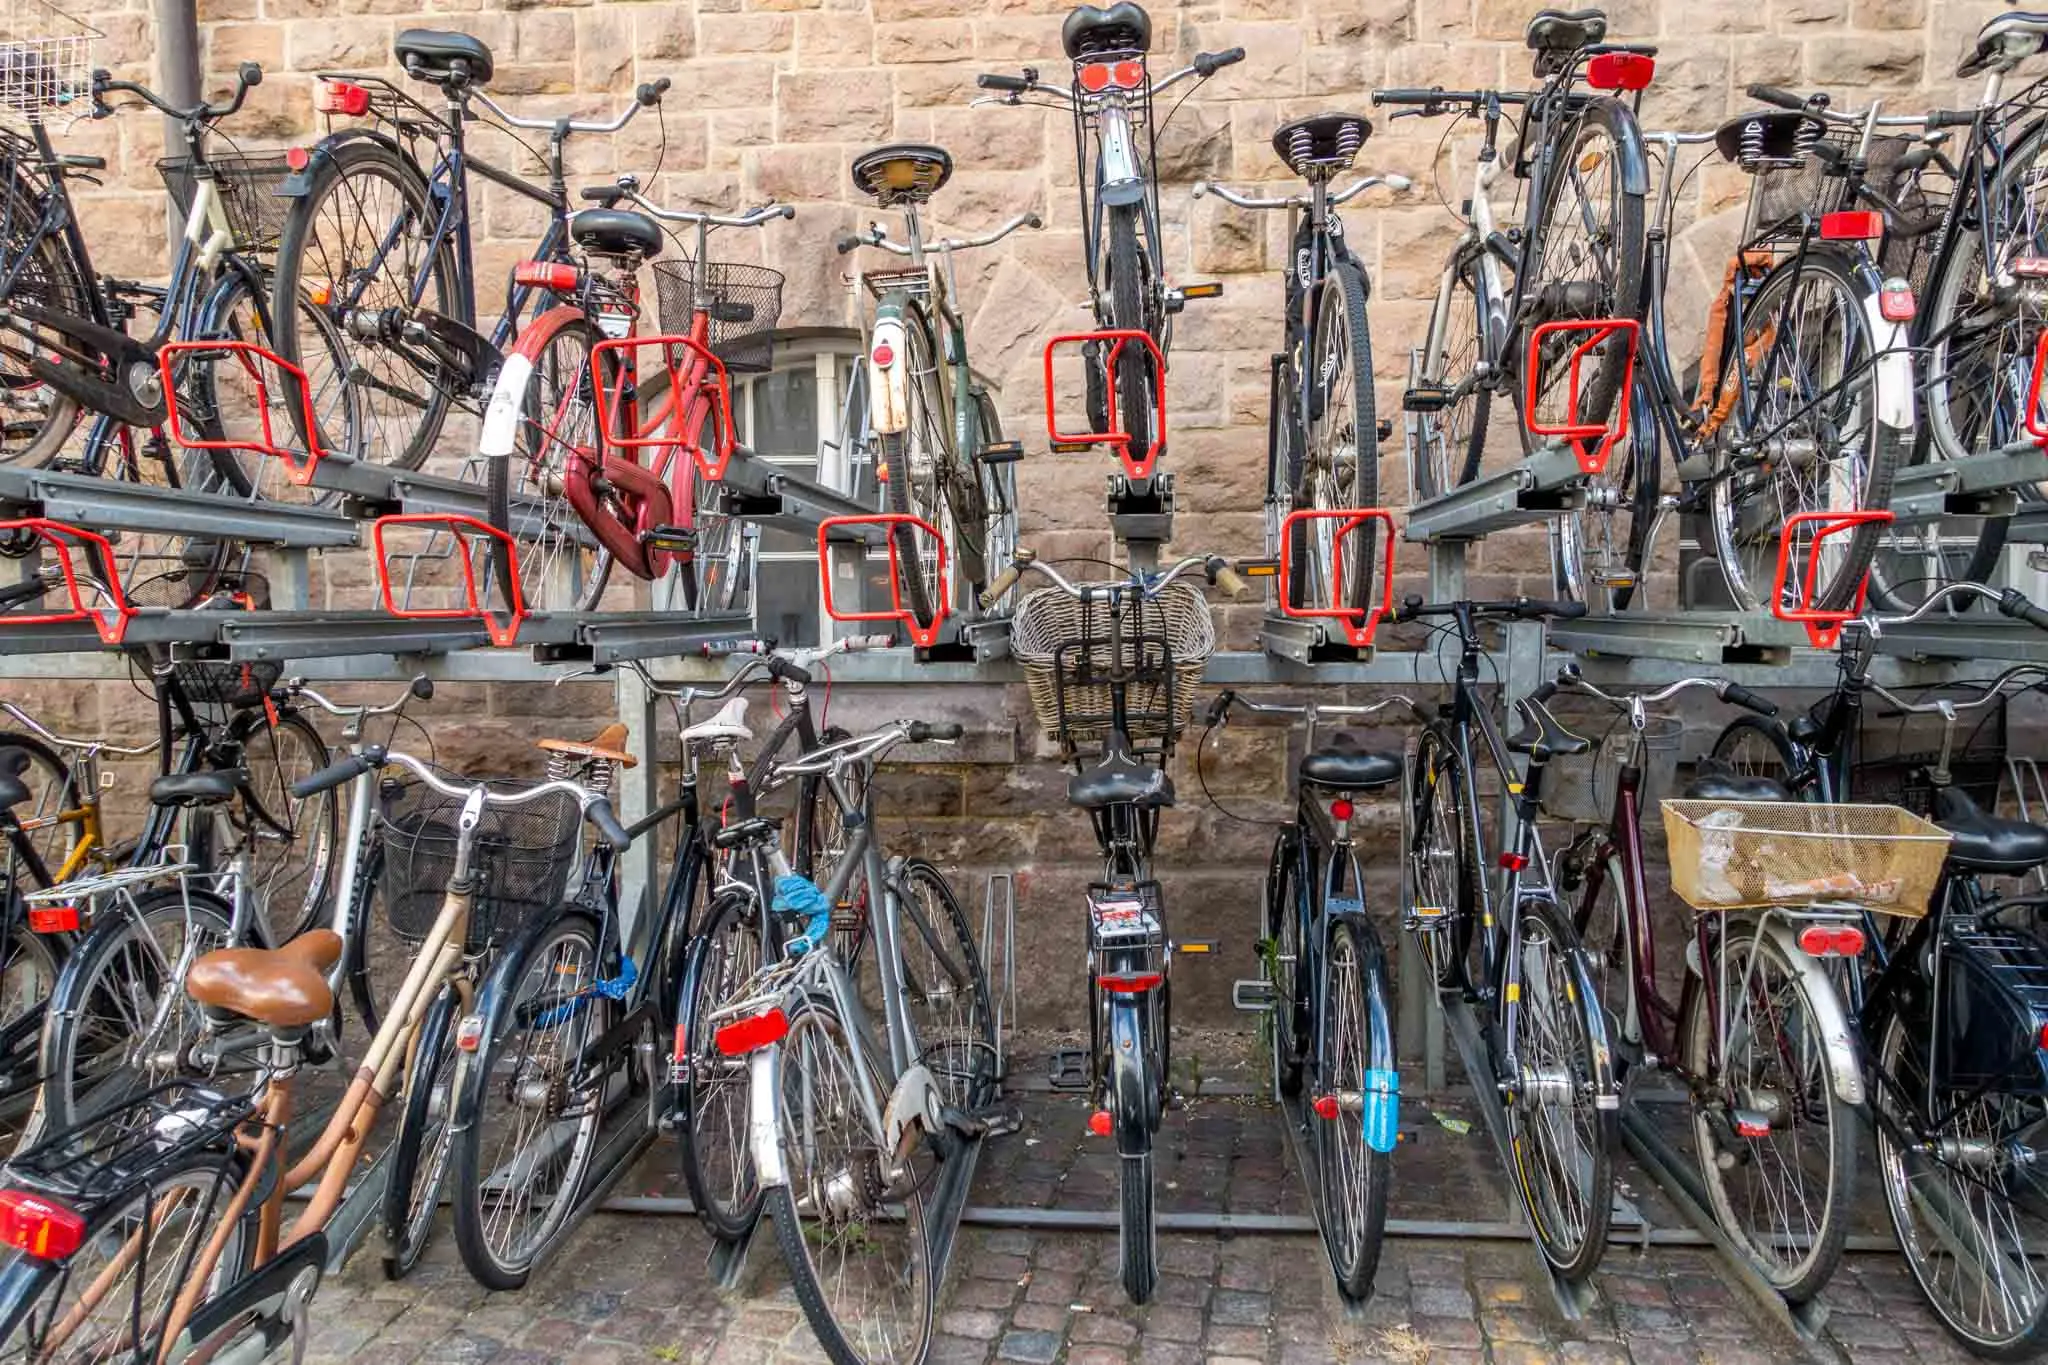 Racks full of bicycles